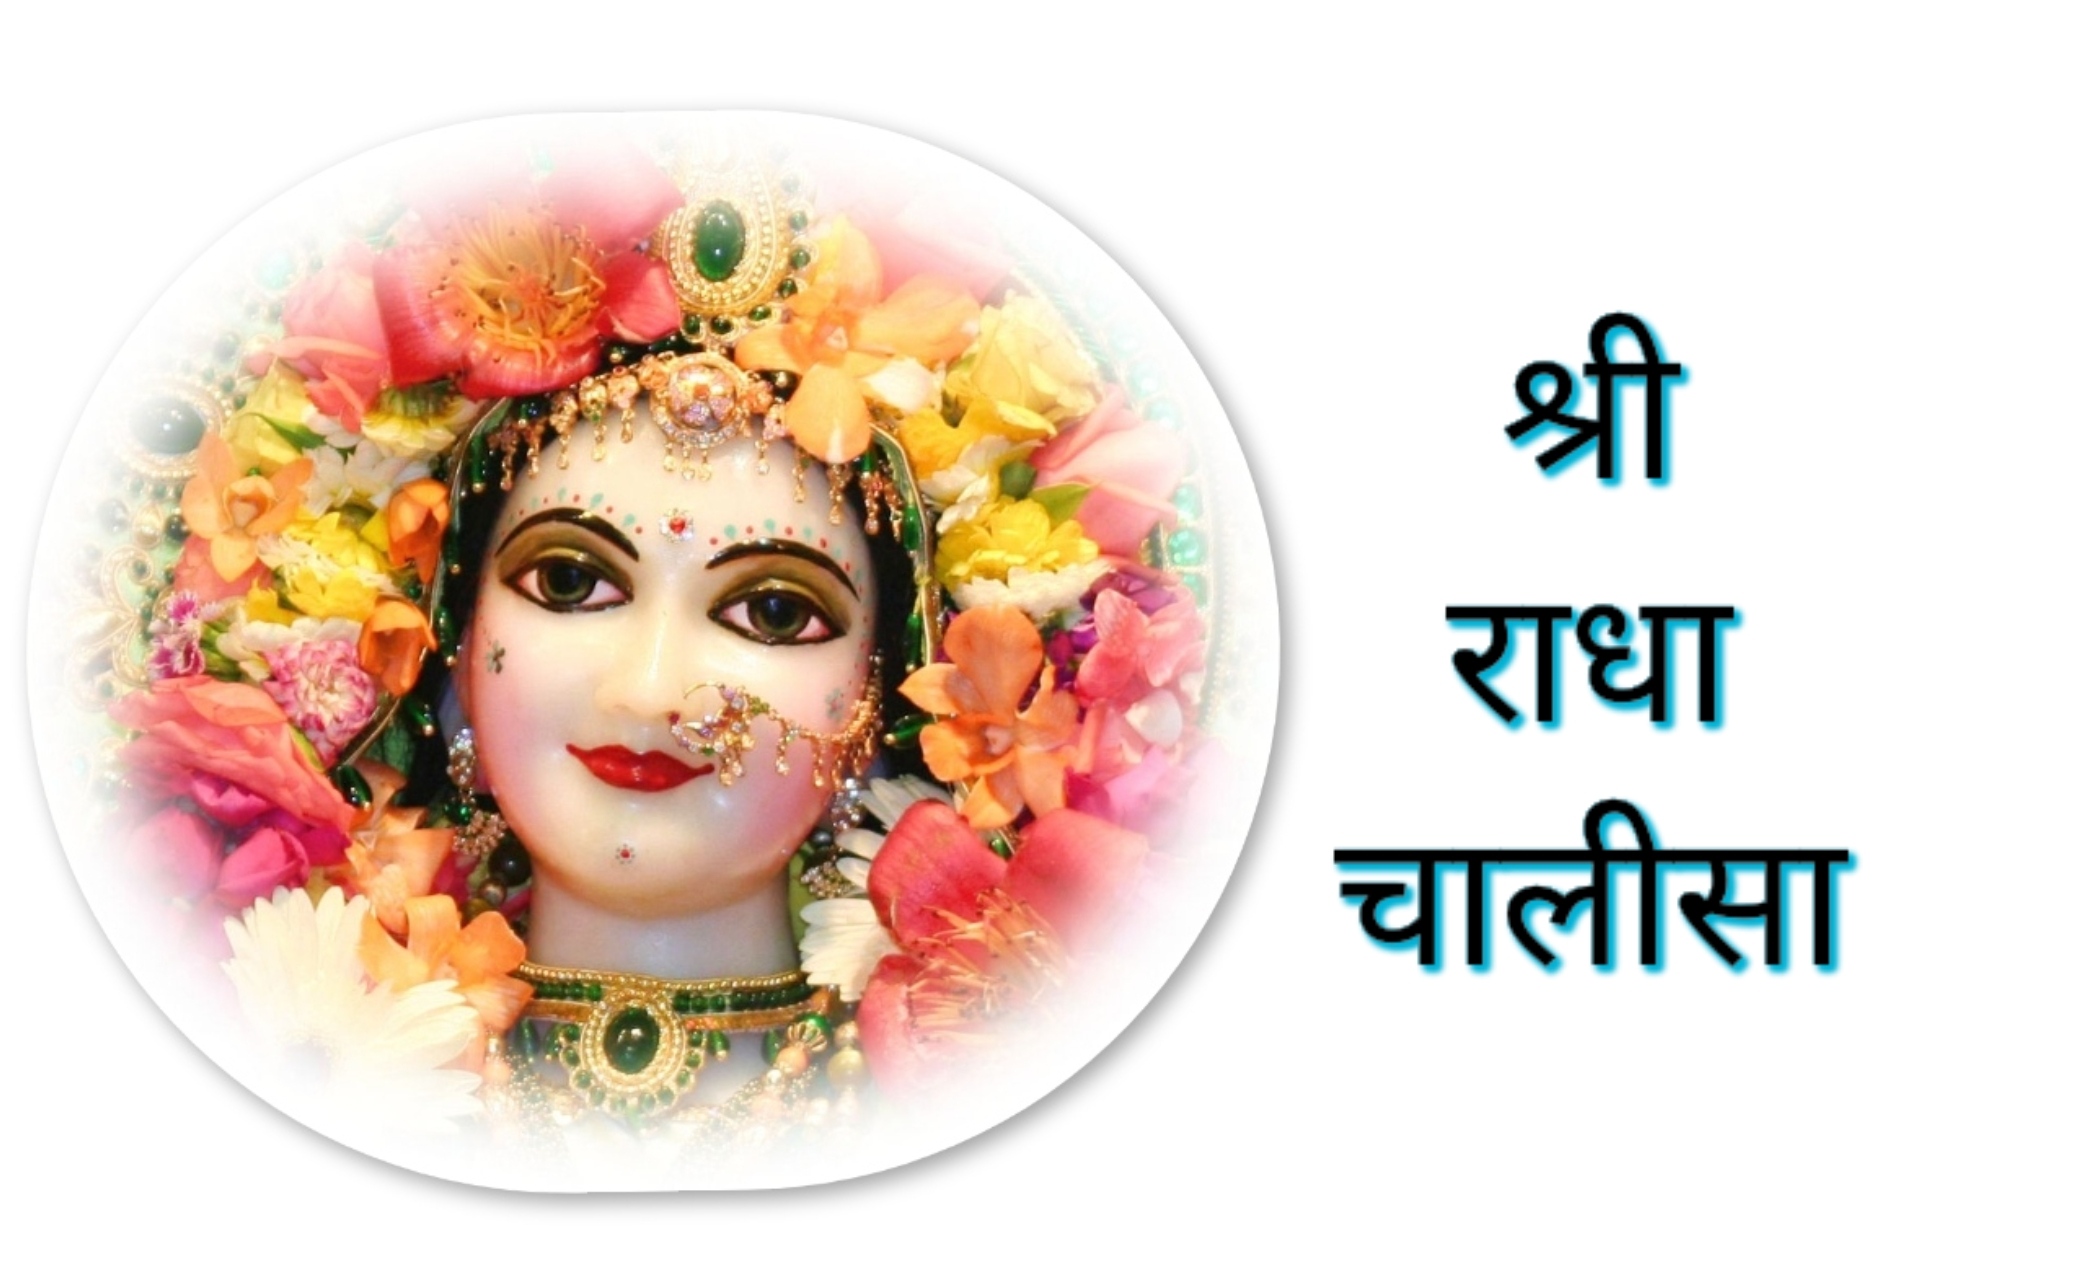 Shri Radha Chalisa